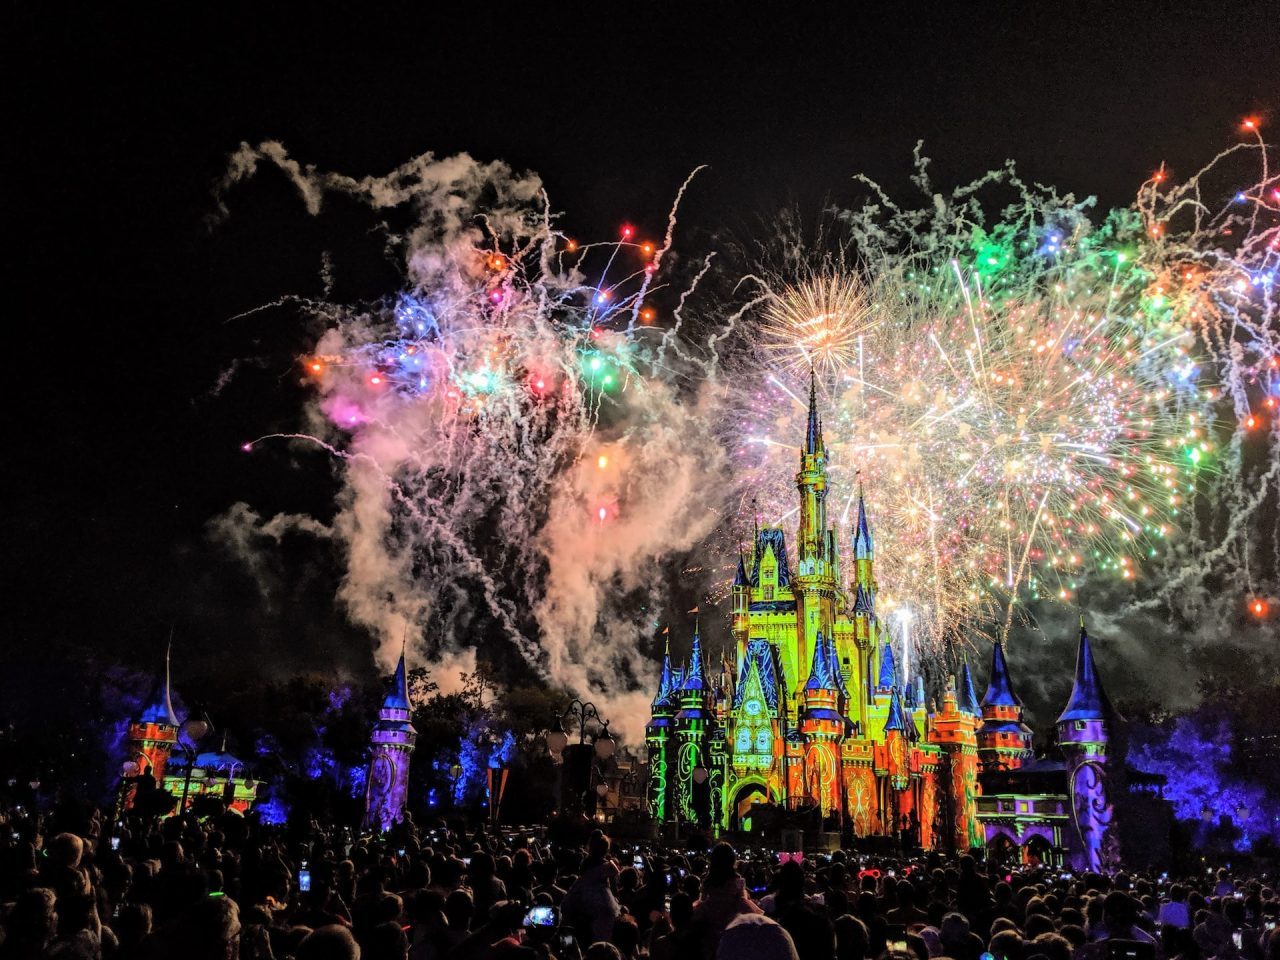 Le meilleur moment pour visiter Disneyworld en Floride